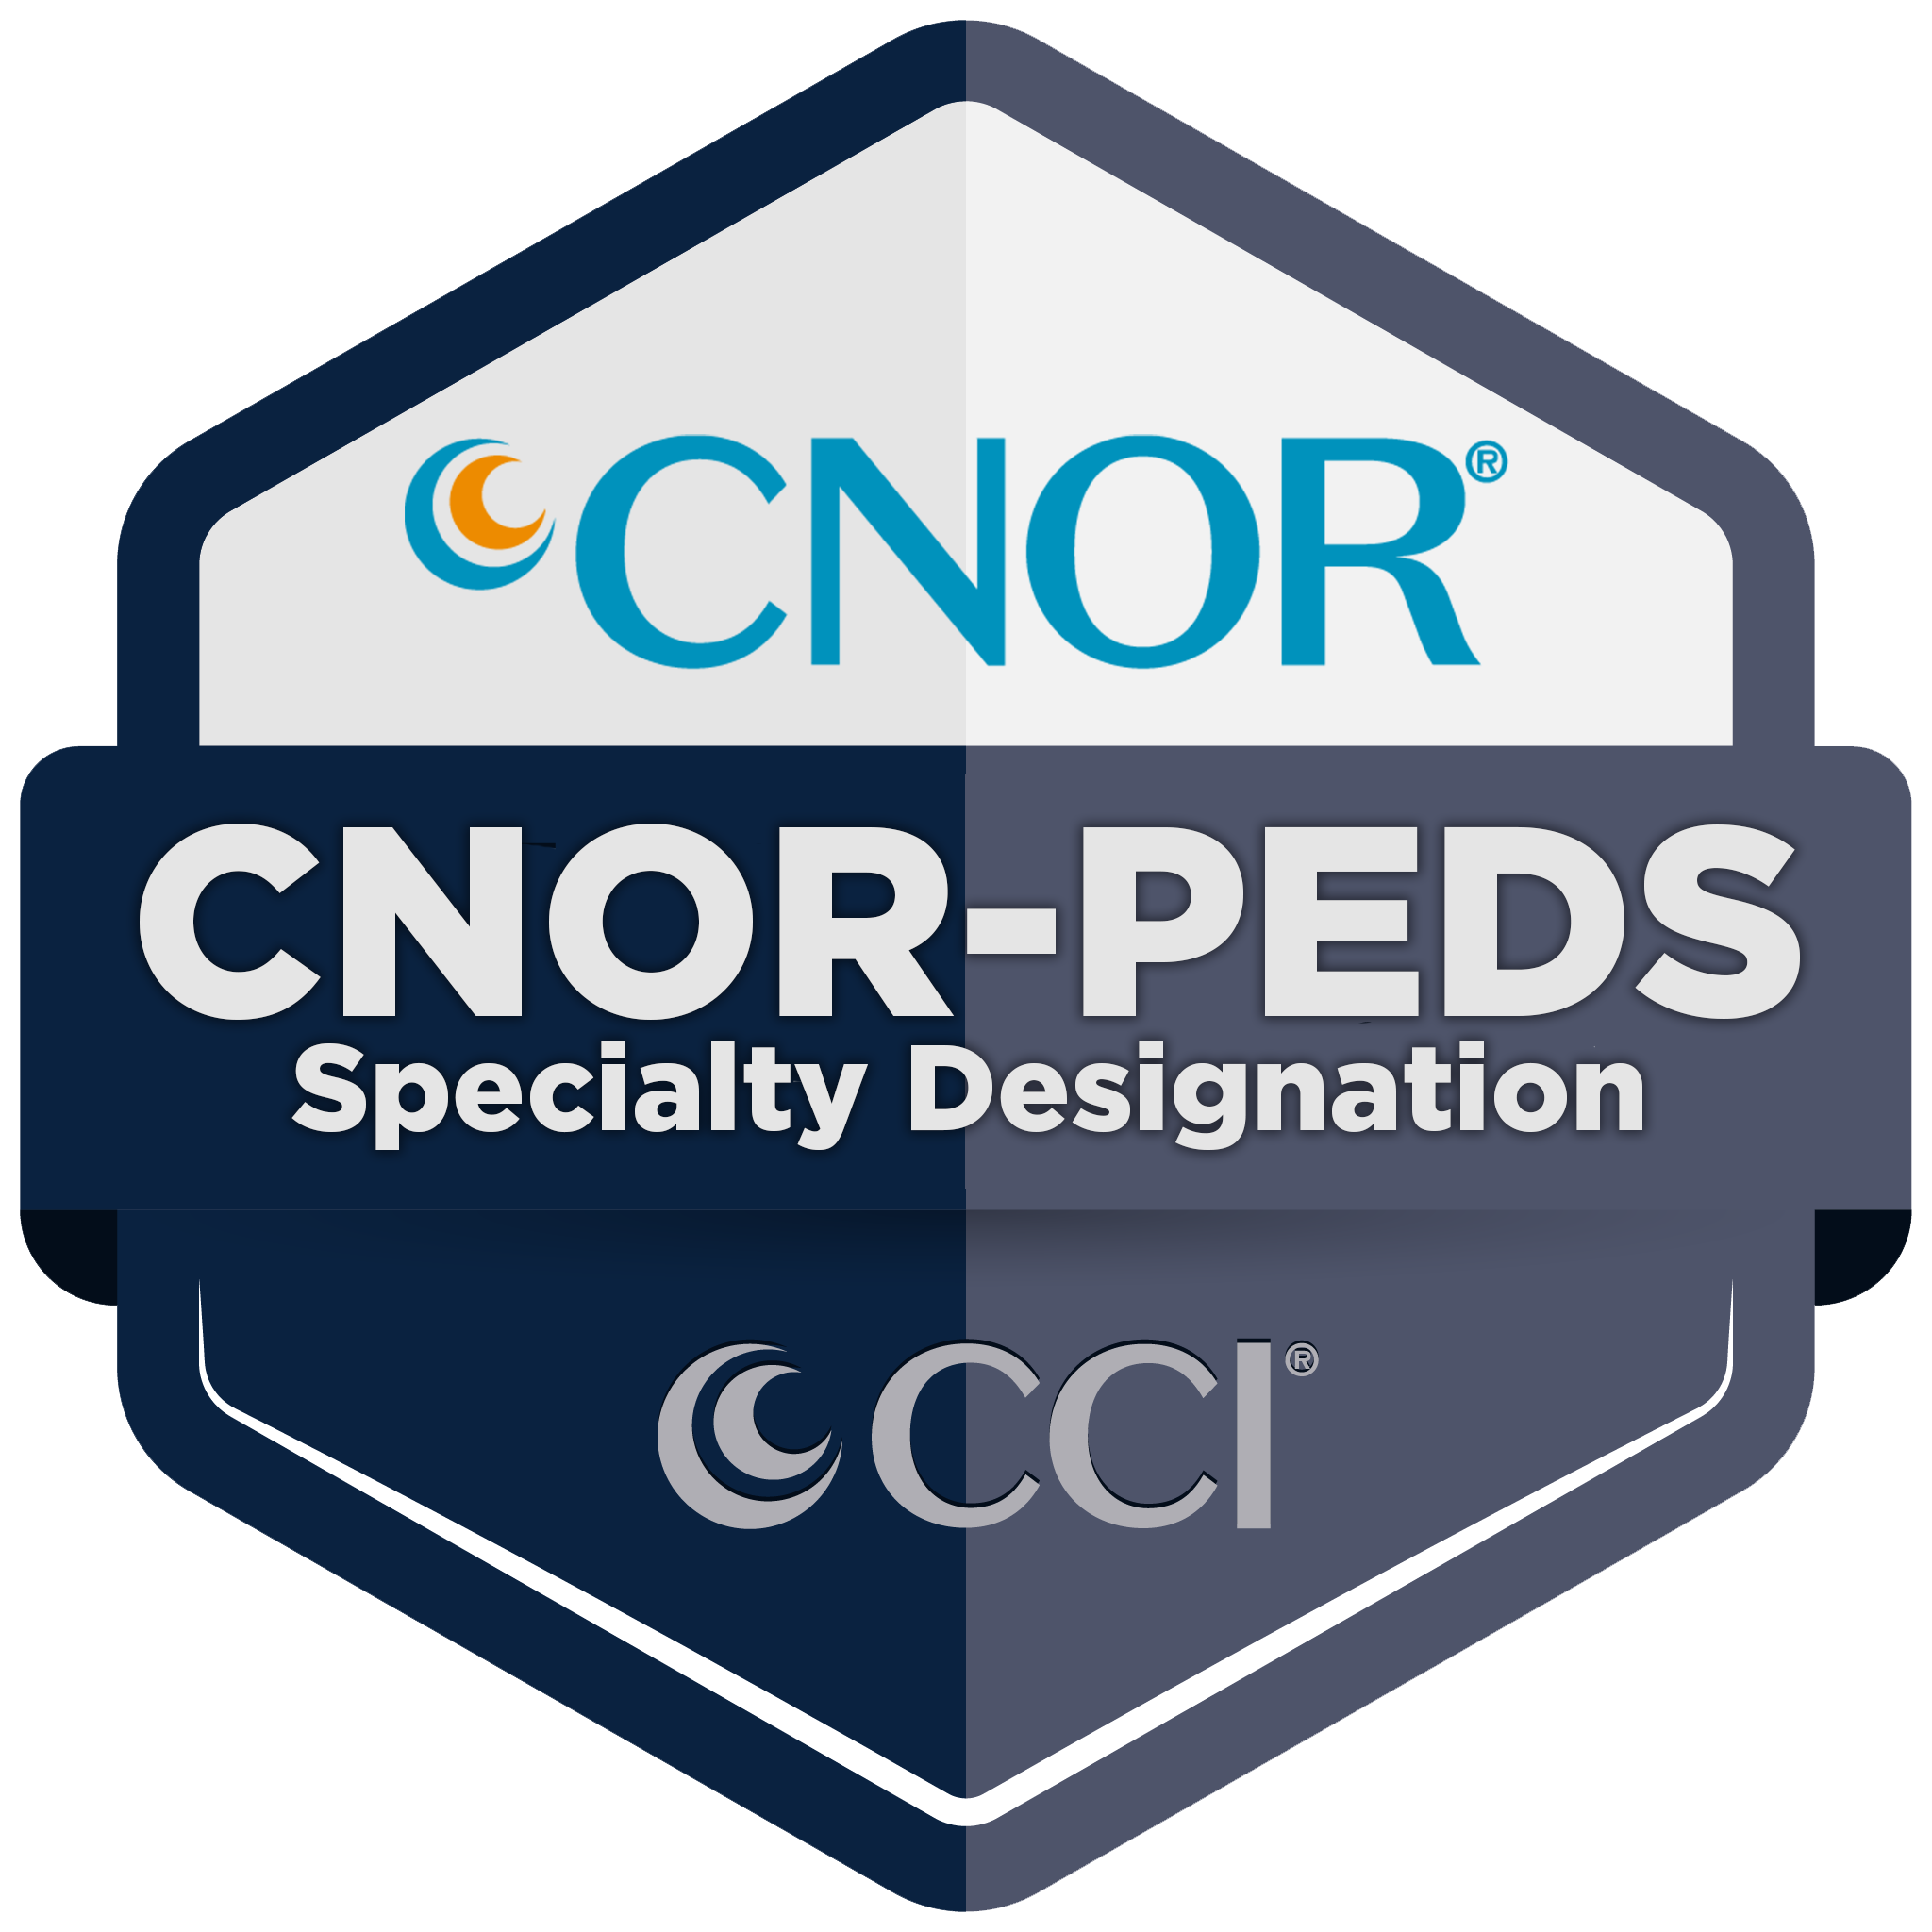 CNOR-PEDS Designation